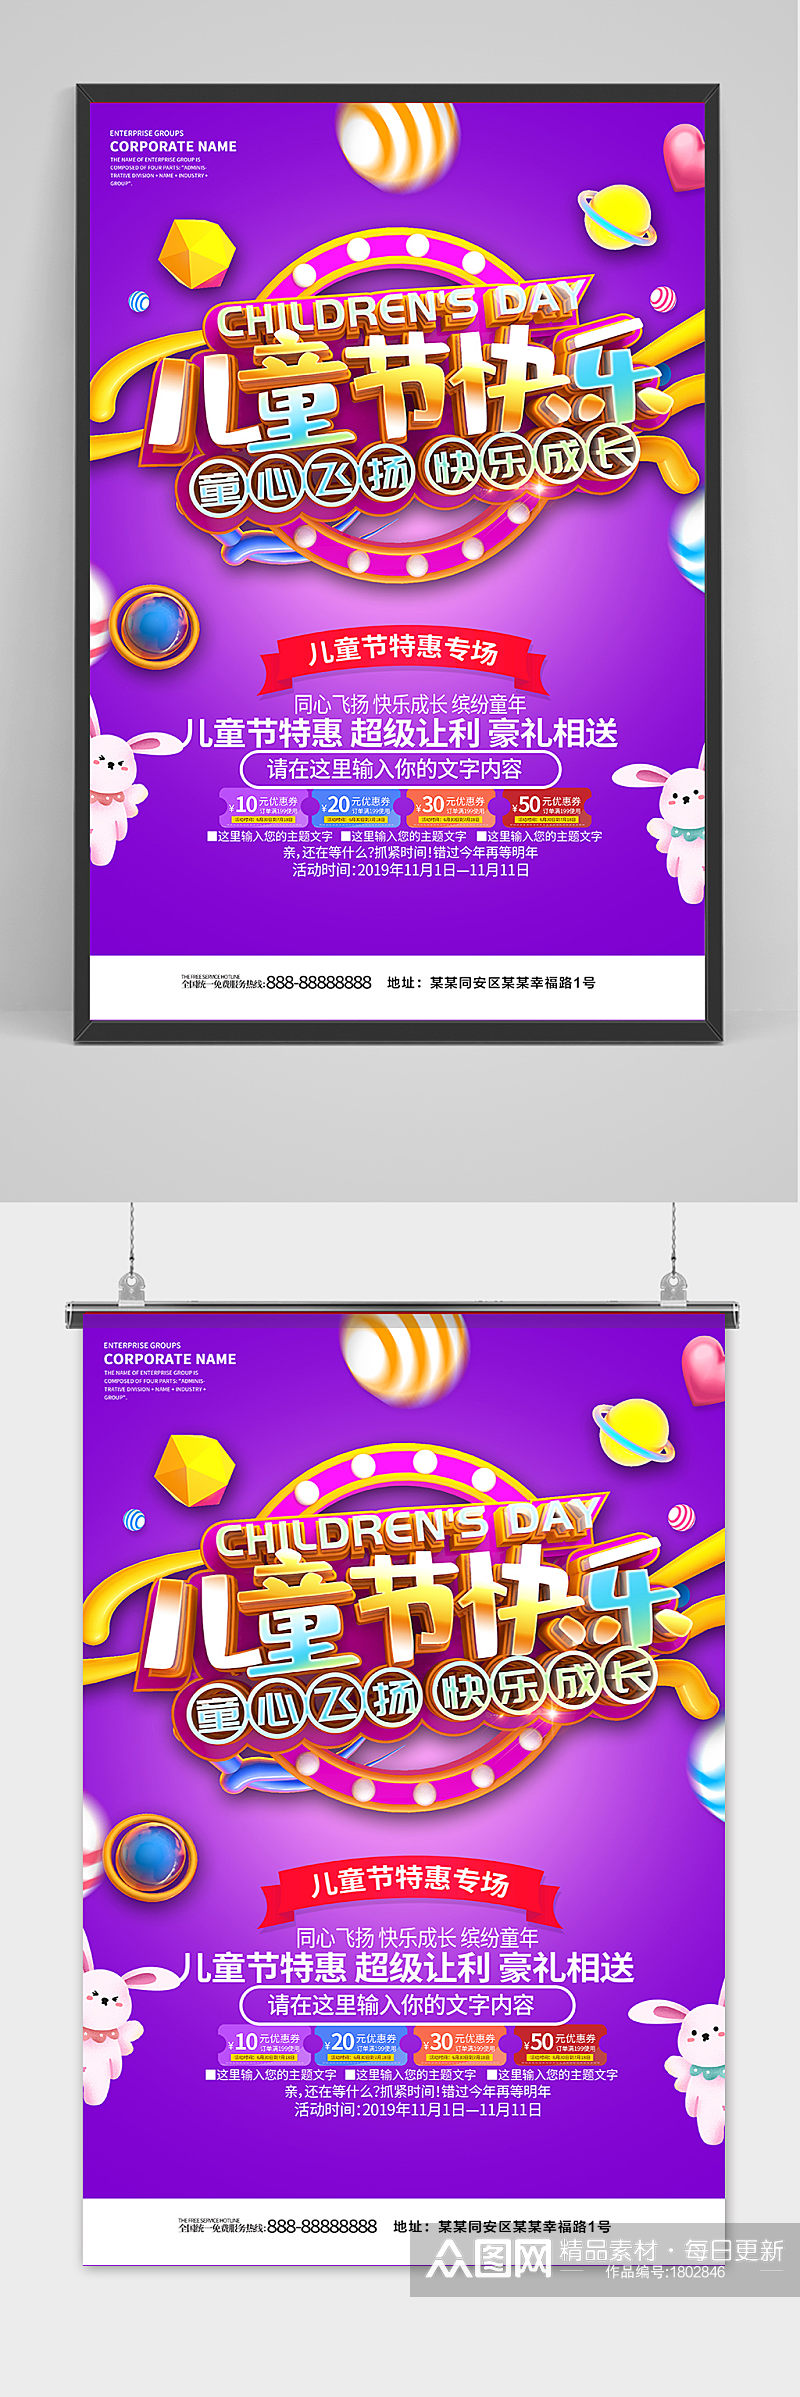 紫色酷炫梦幻61儿童节海报素材